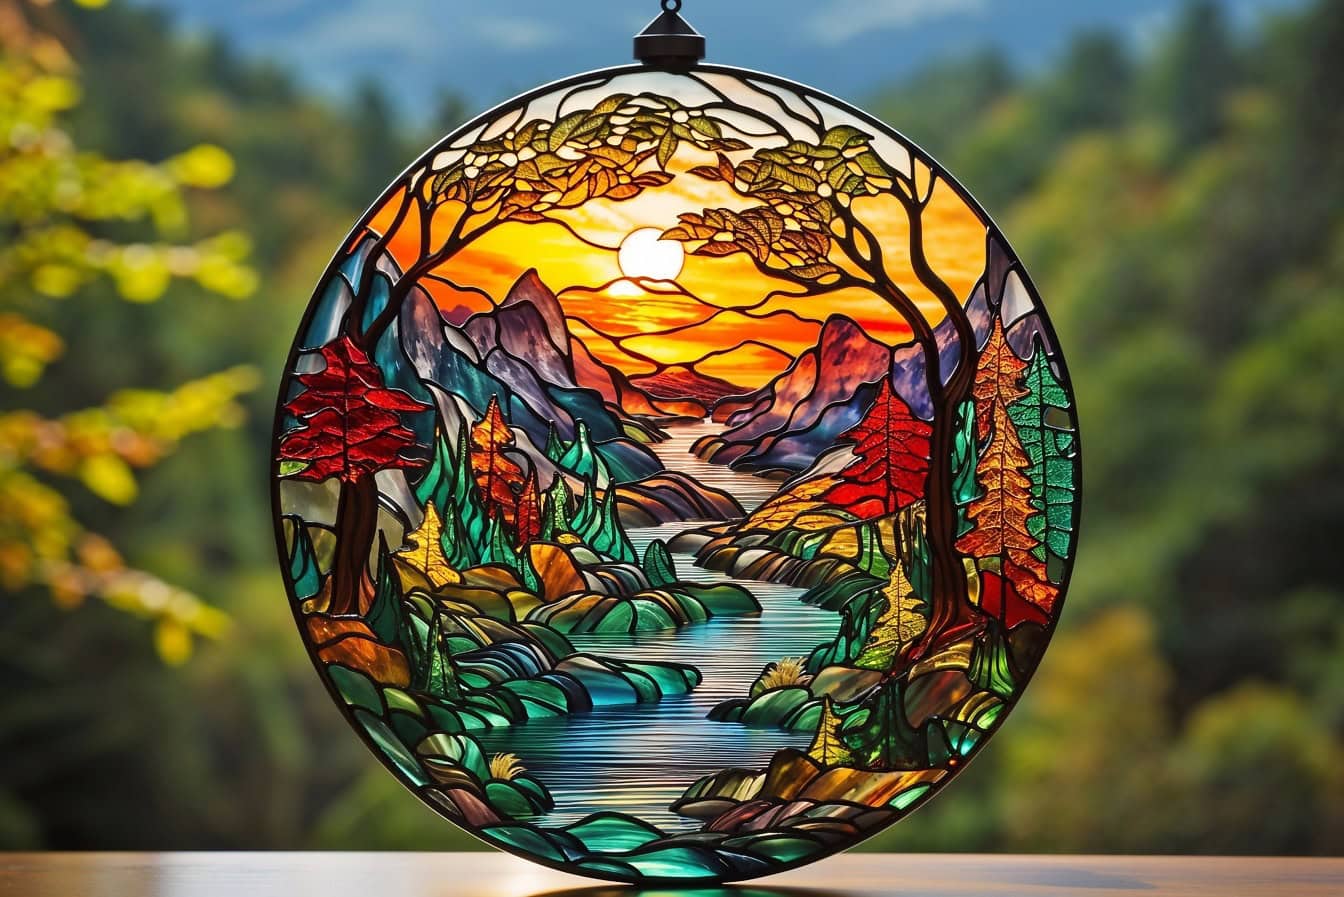 Håndlavet rund farvet glas dekoration med et tema af flod og bjerge om efteråret med solstråler som baggrundsbelysning